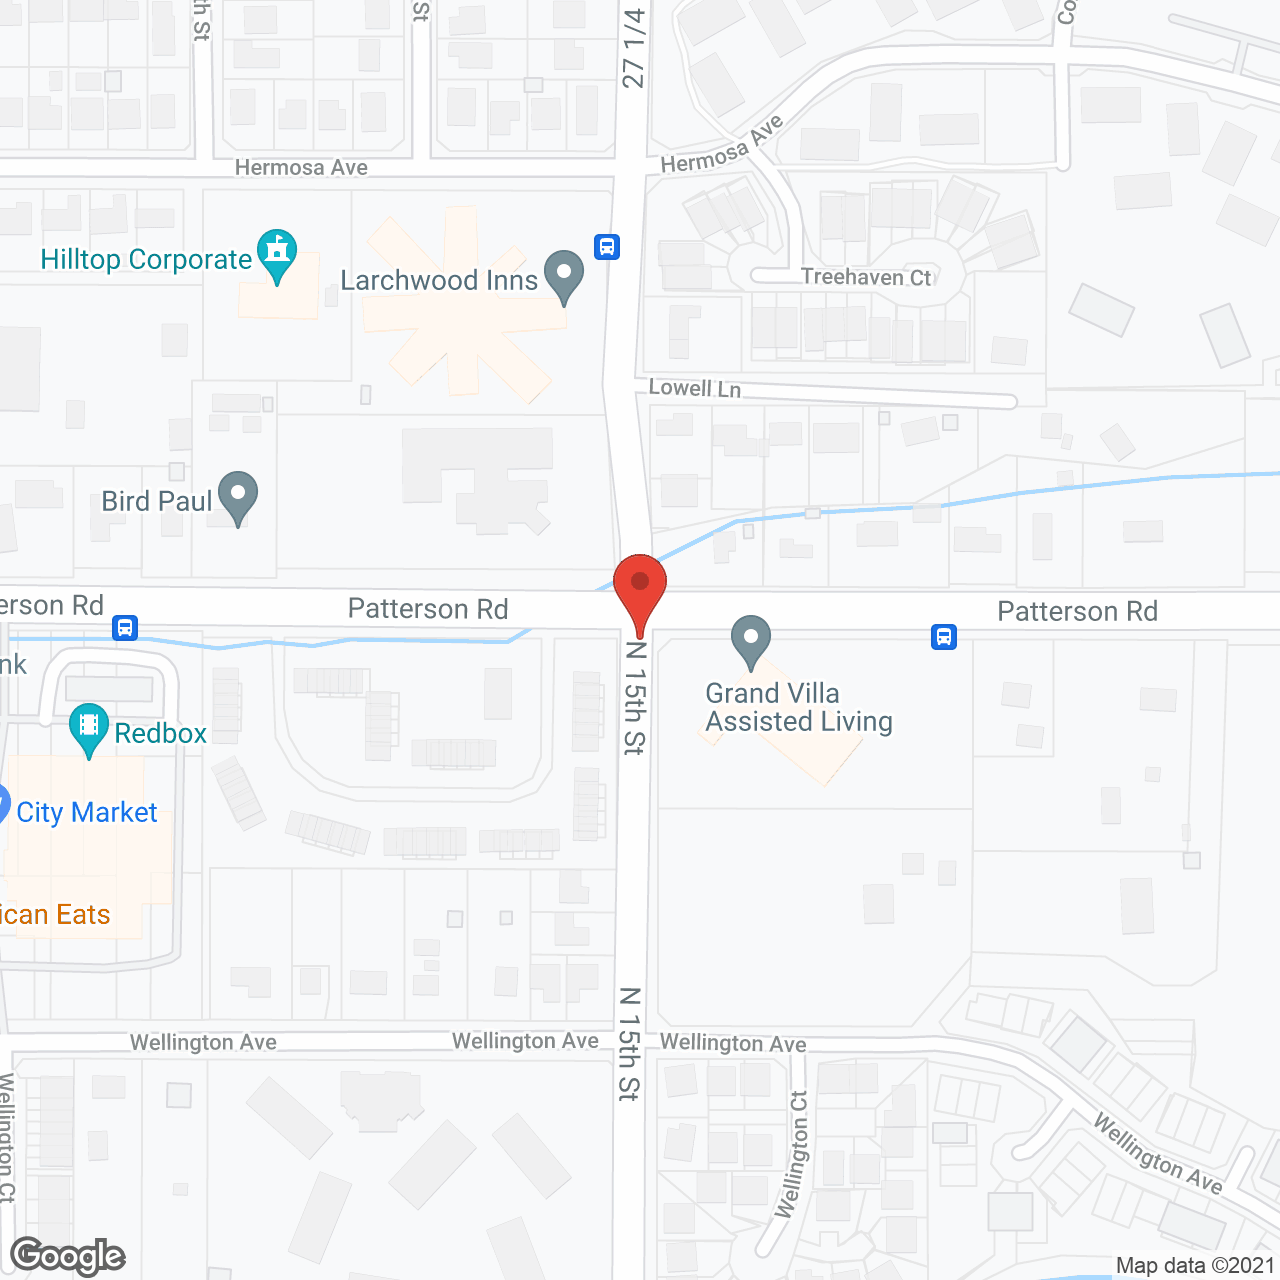 Grand Villa in google map